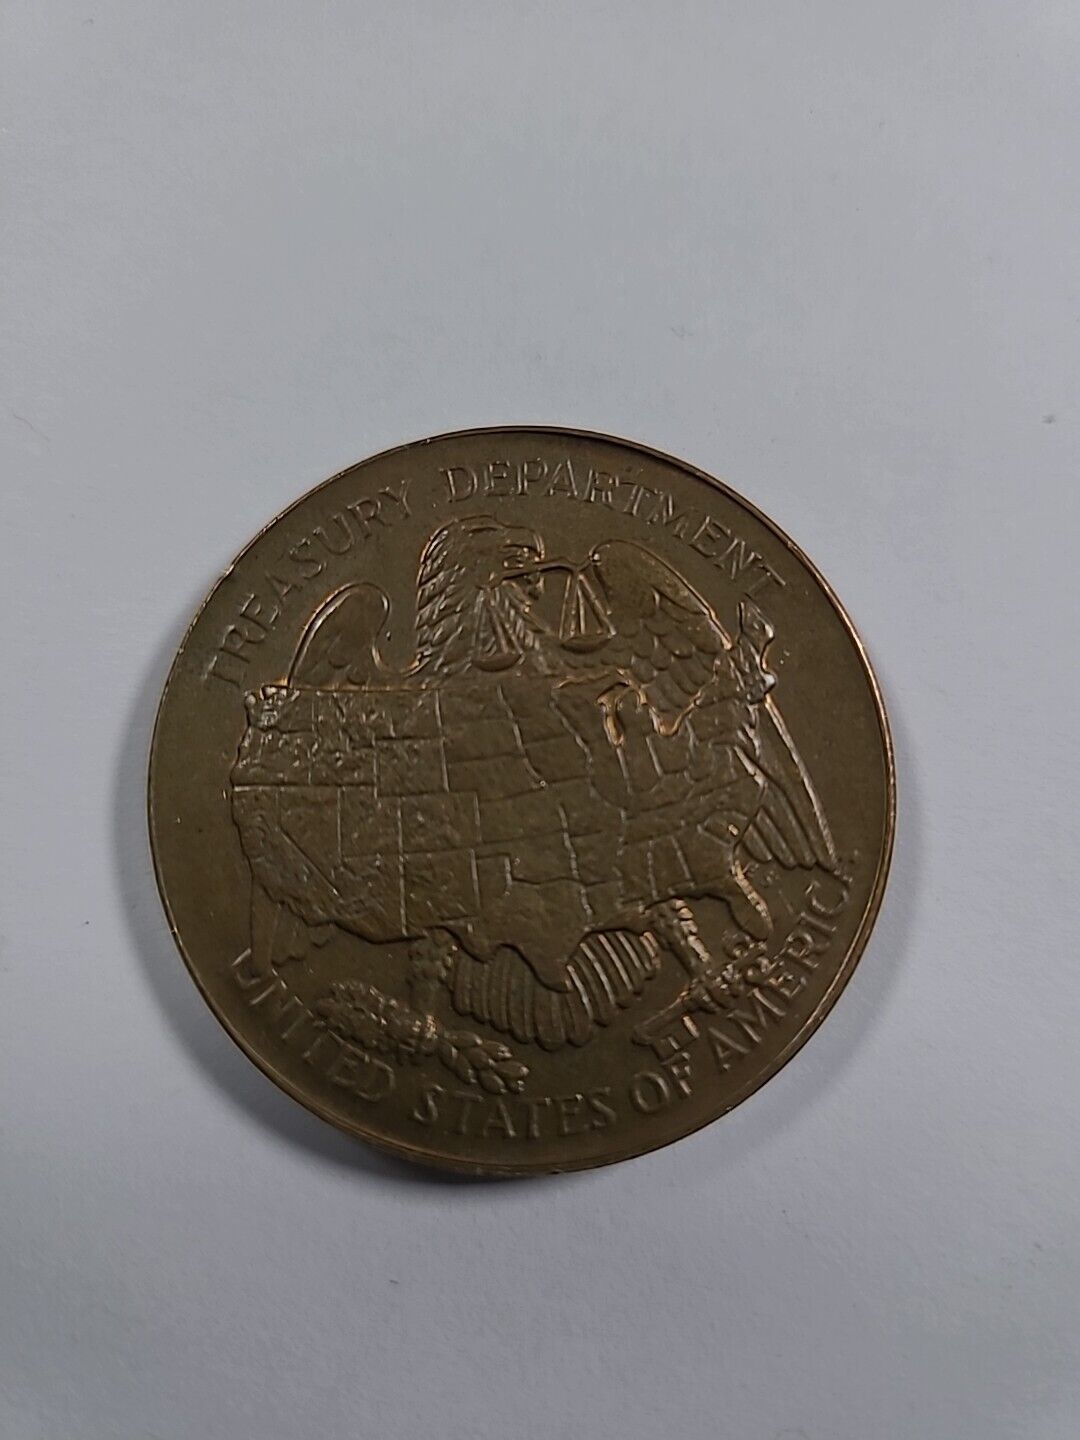 U S Mint,San Francisco Coins